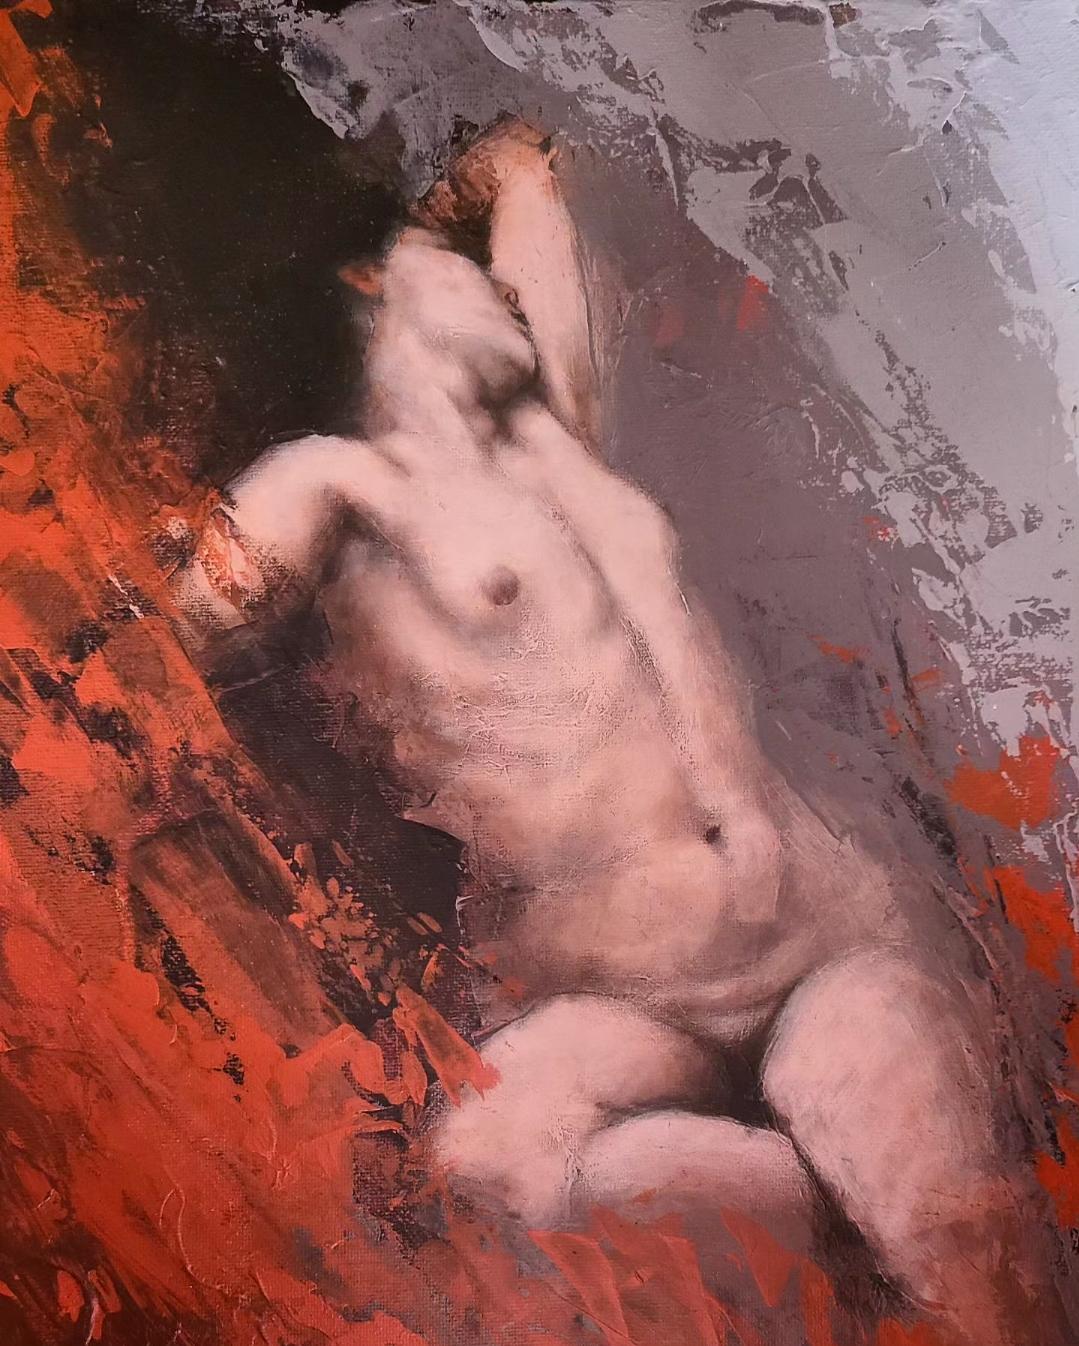 Portrait Painting Louis Braquet - "Tempestas" - Peinture contemporaine de nu figuratif